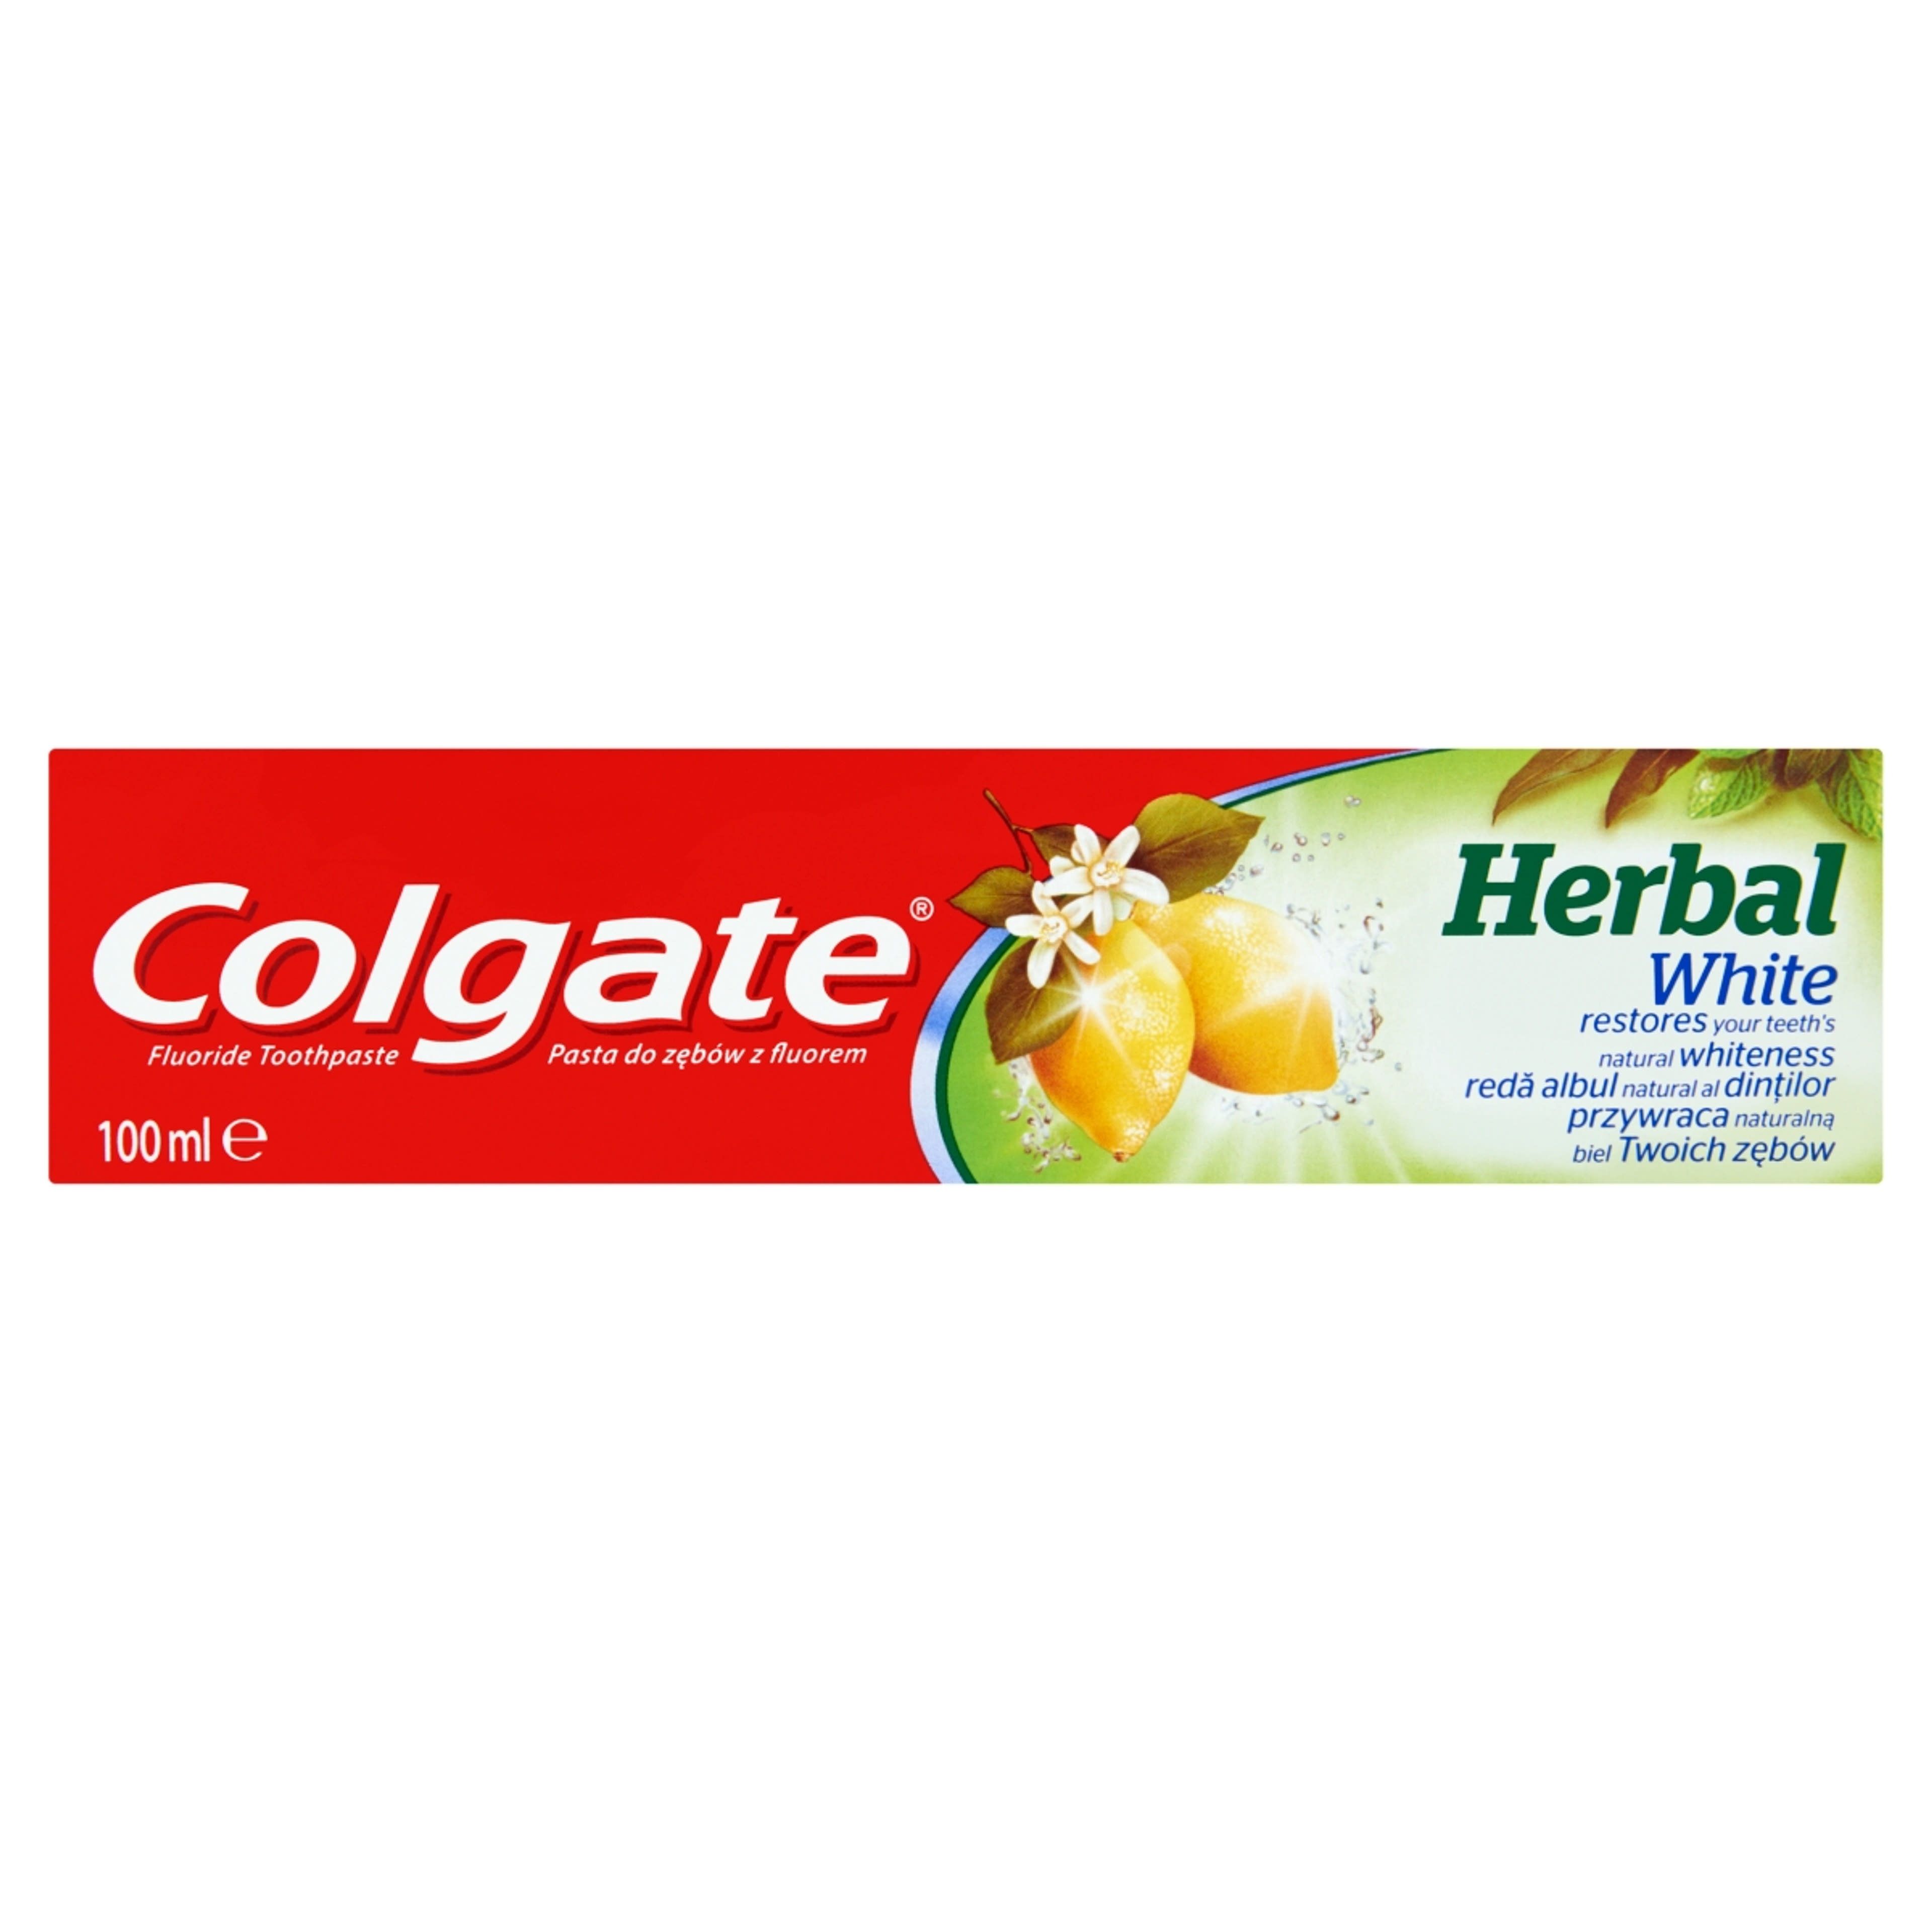 Colgate Herbal White fogkrém - 100 ml